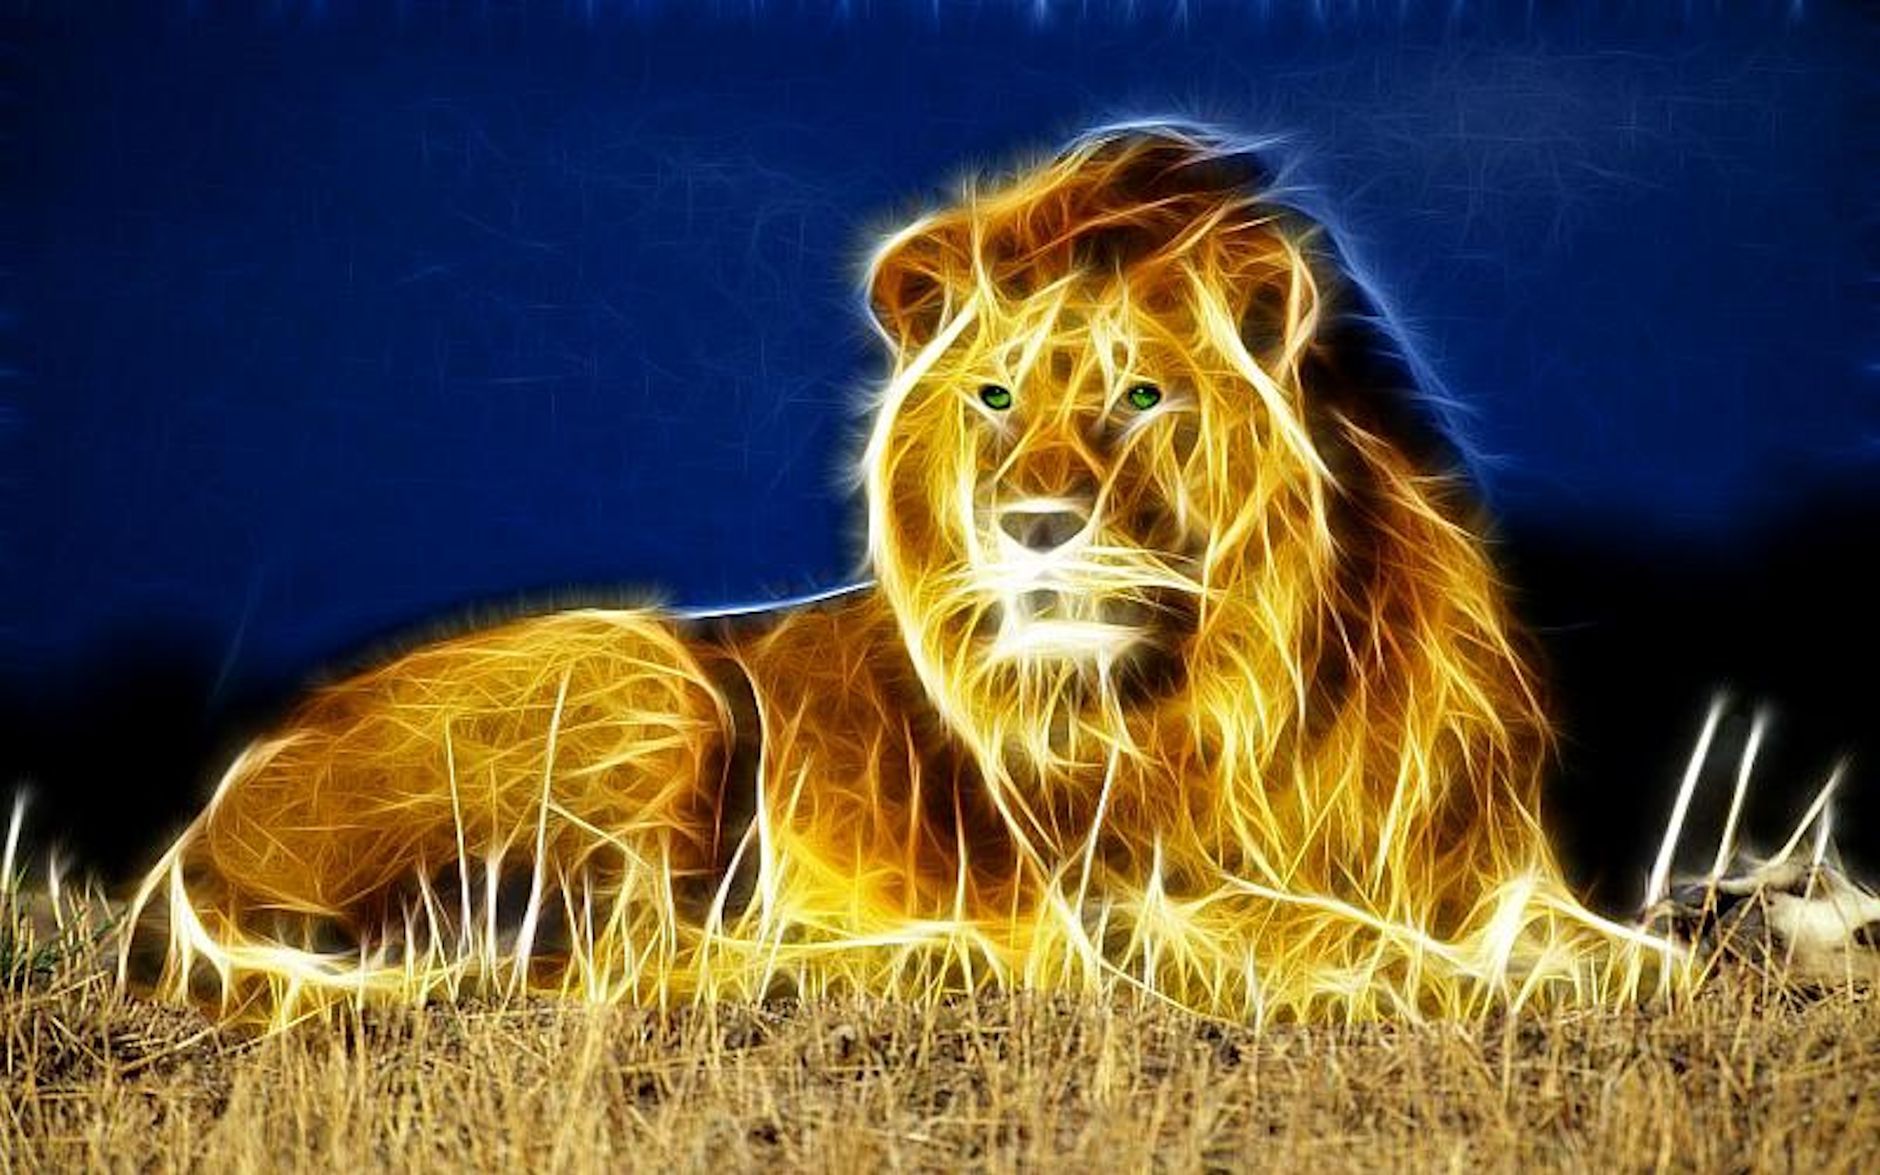 3D Lion PC Desktop Wallpapers - Wallpaper Cave